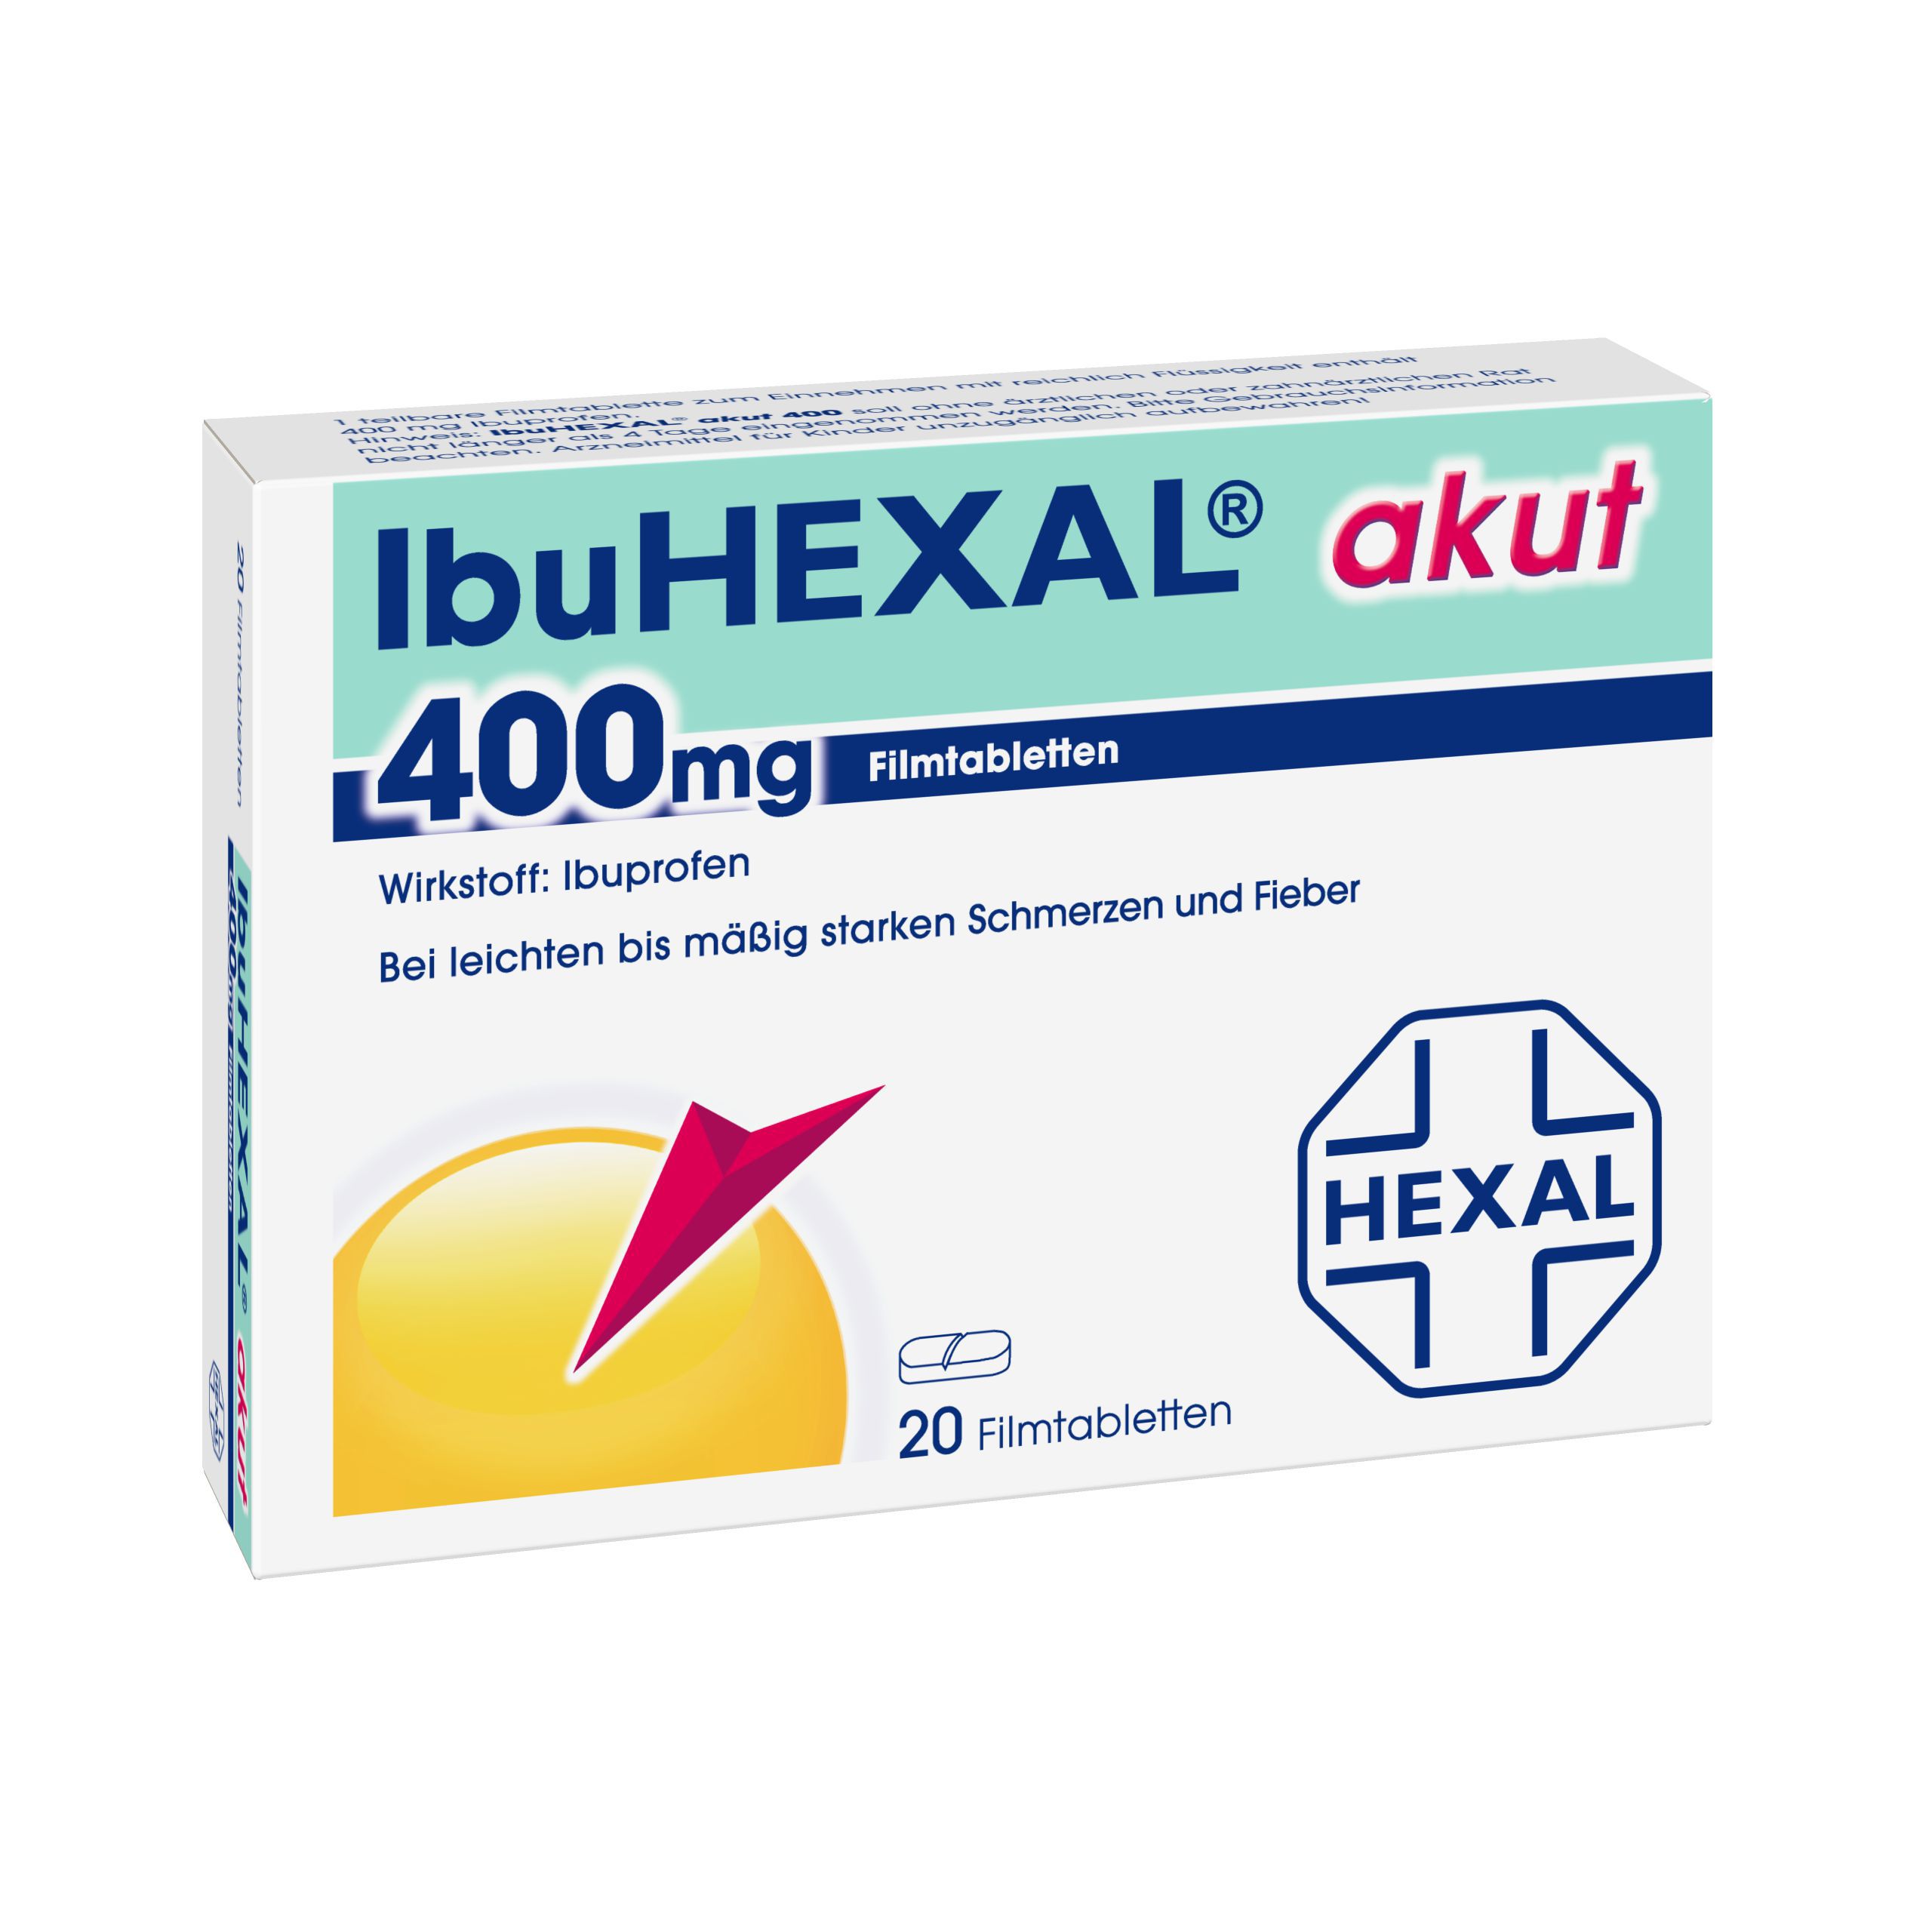 IbuHEXAL akut 400mg Spar-Set 5x20Tabletten zur Behandlung von leichten bis mäßigen Schmerzen (Kopfschmerzen, Gliederschmerzen, Regelschmerzen, etc)